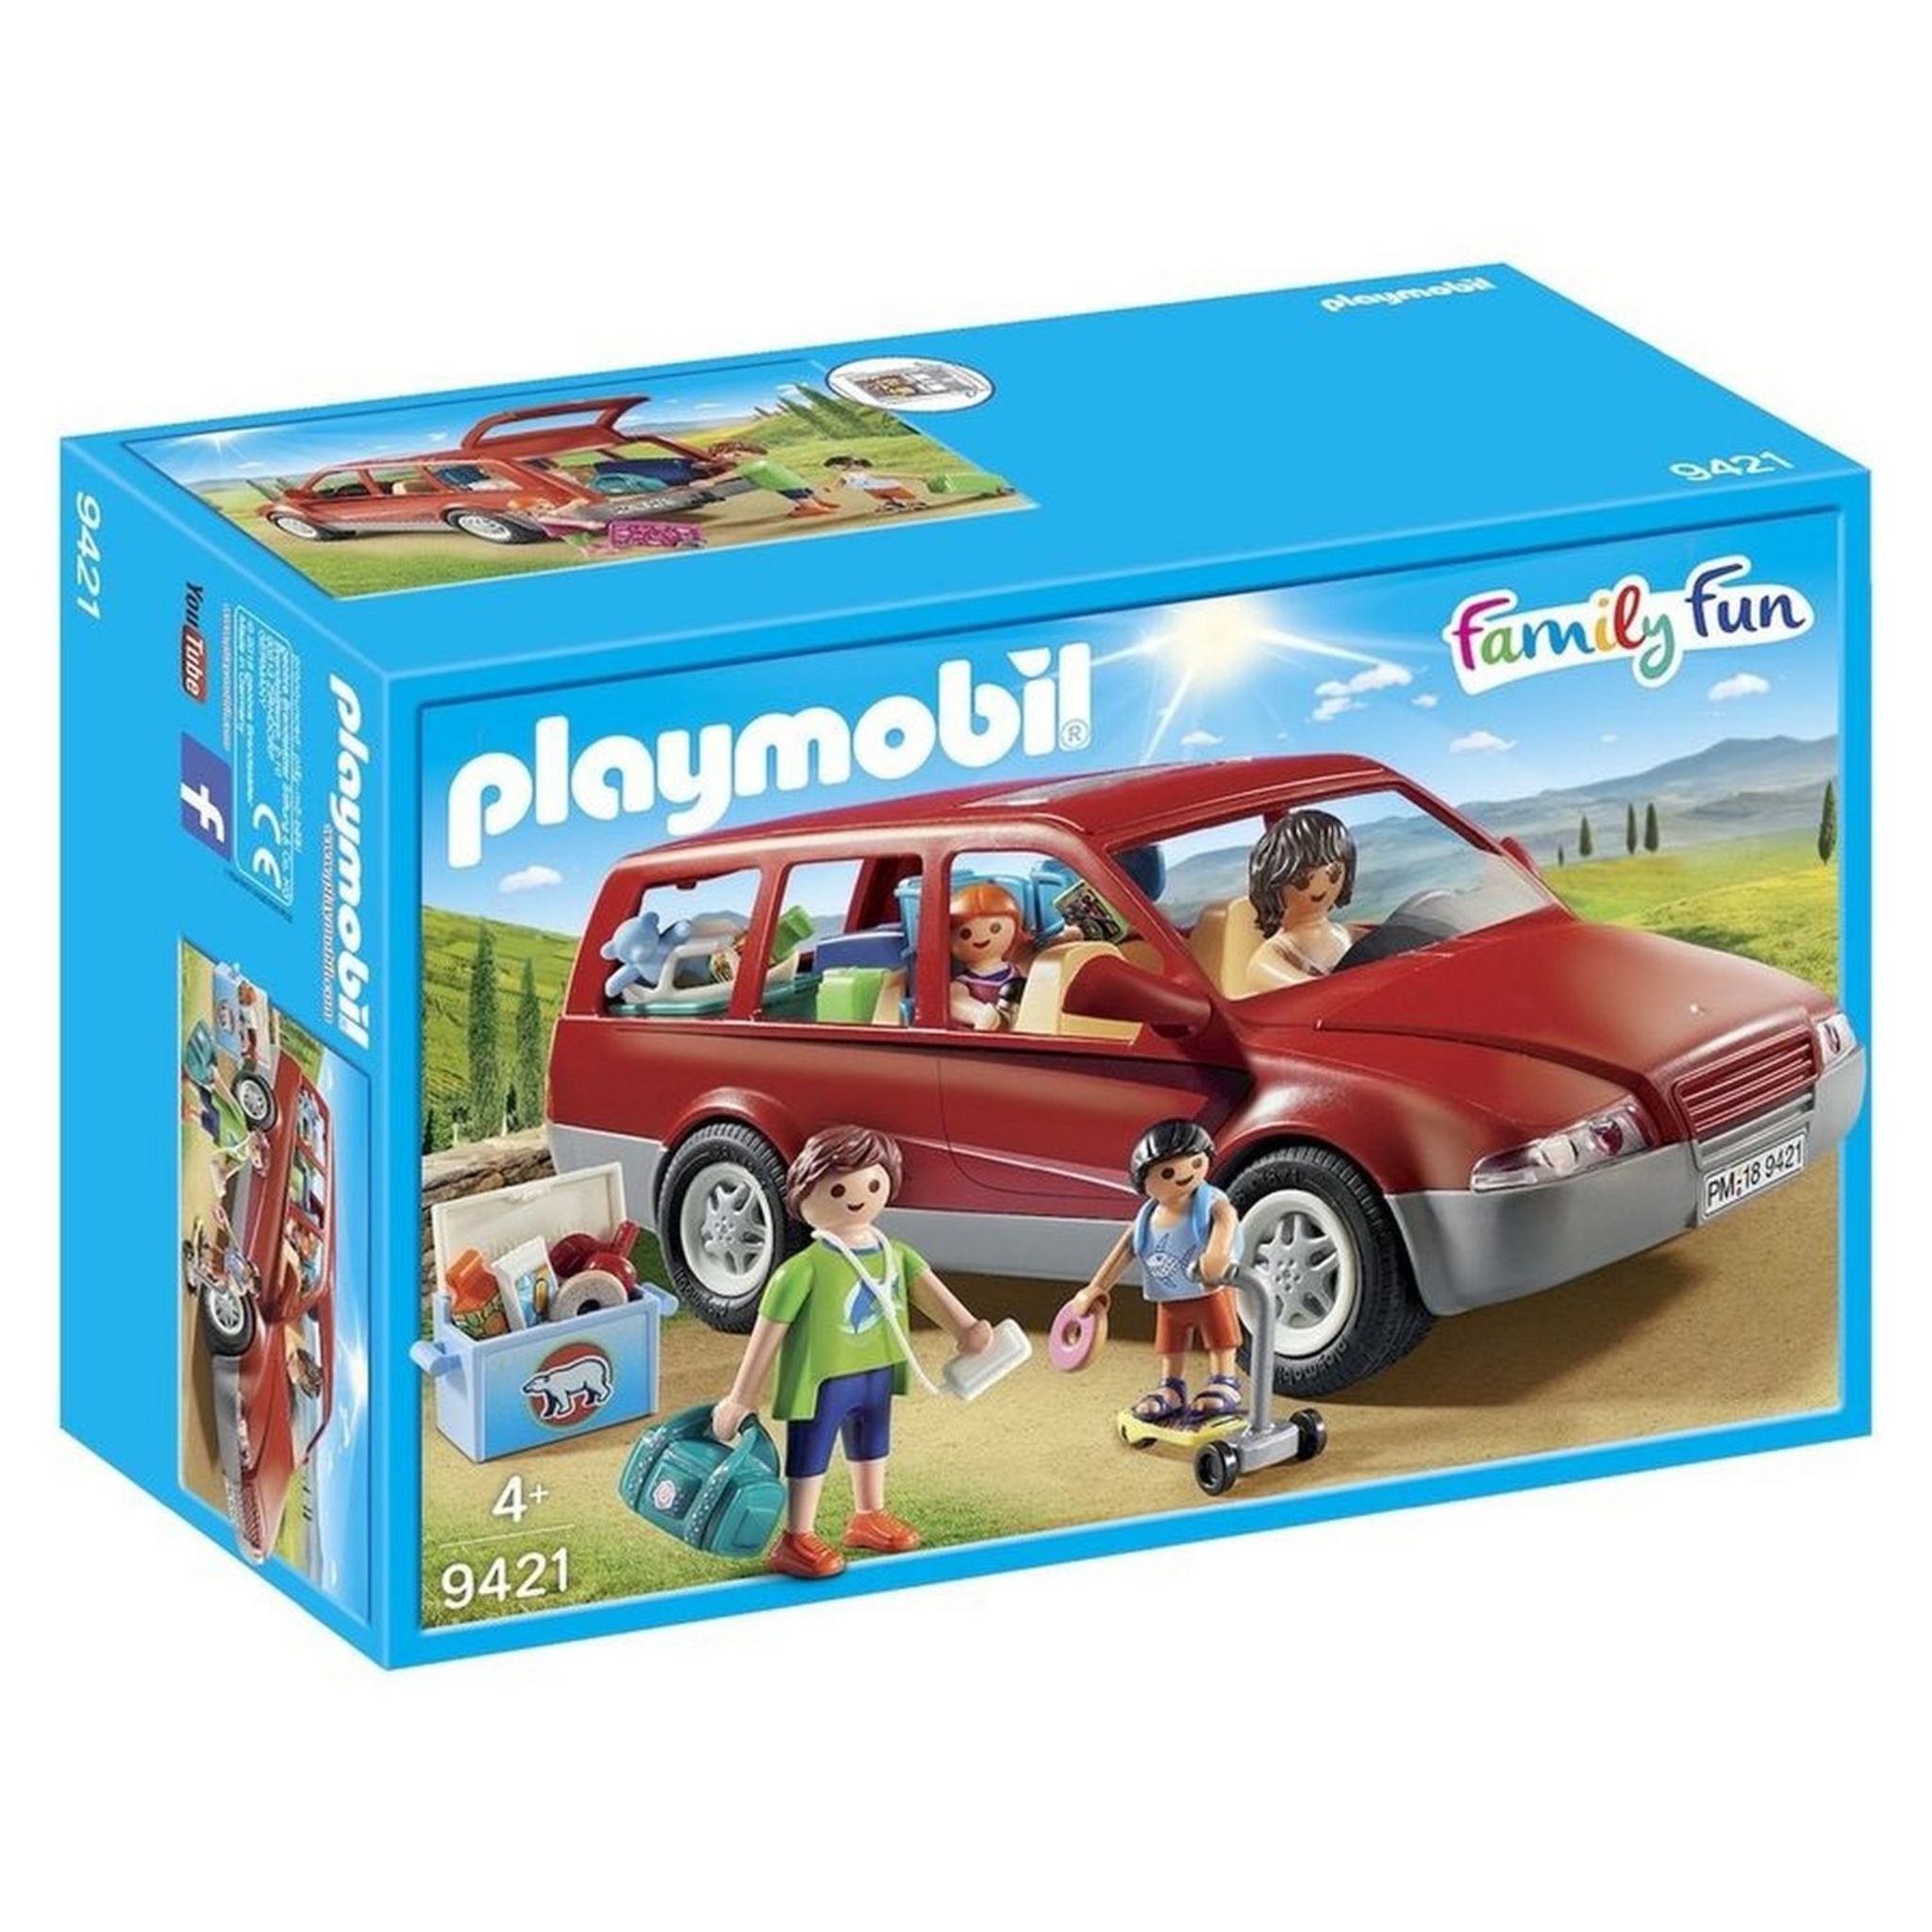 Soldes Playmobil Parc de jeu avec toboggan (9423) 2024 au meilleur prix sur